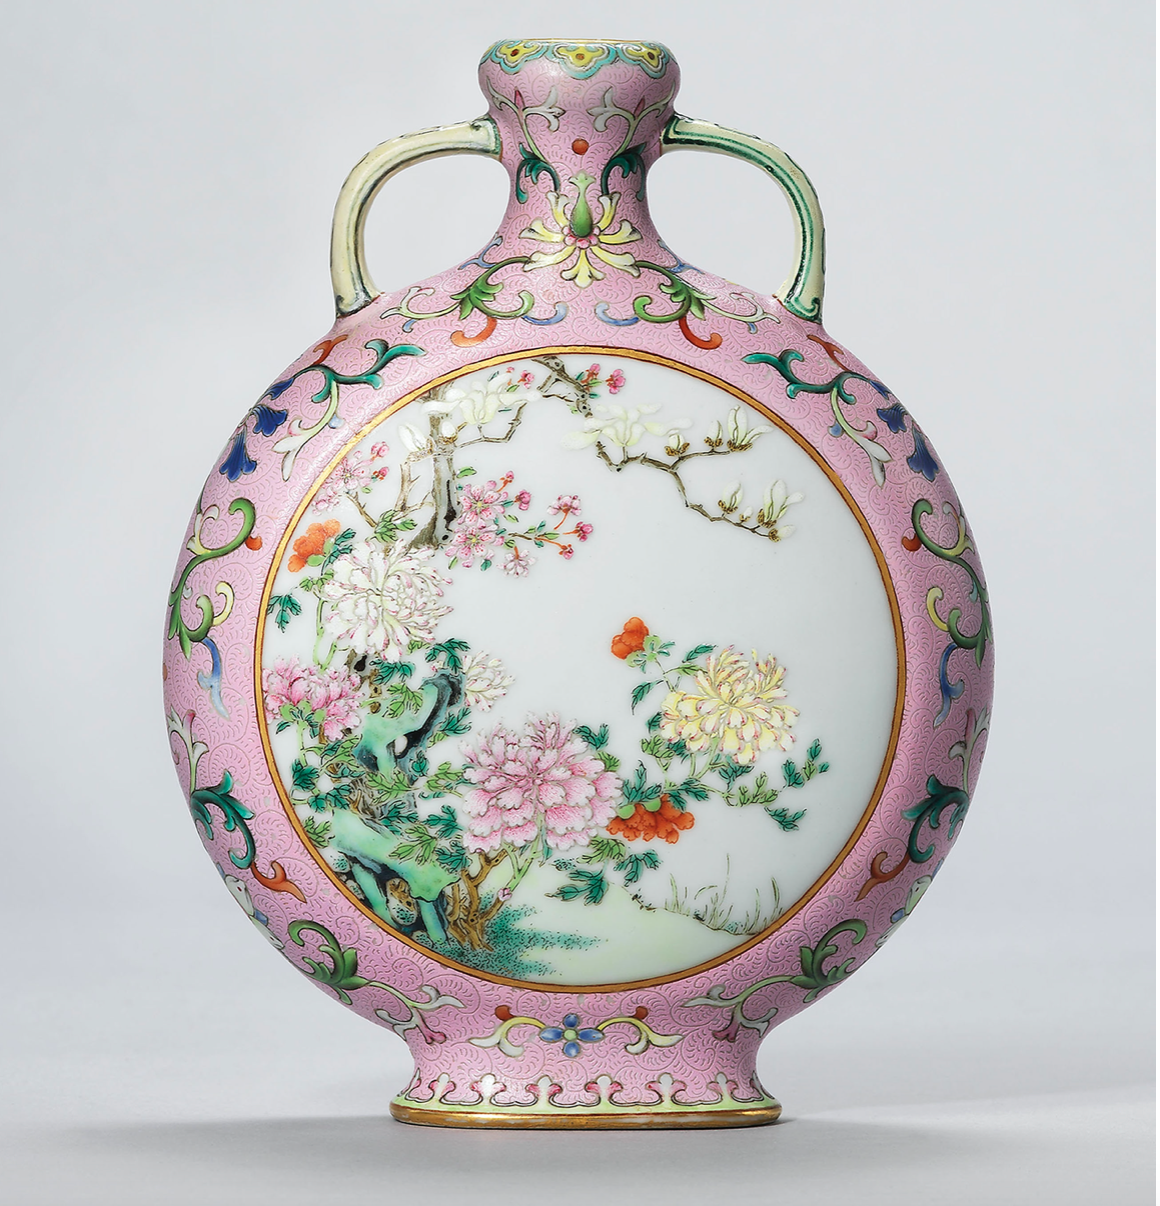 Il significato dei fiori nelle porcellane cinesi? Ce lo rivela Christie’s attraverso le straordinarie ceramiche passate in asta